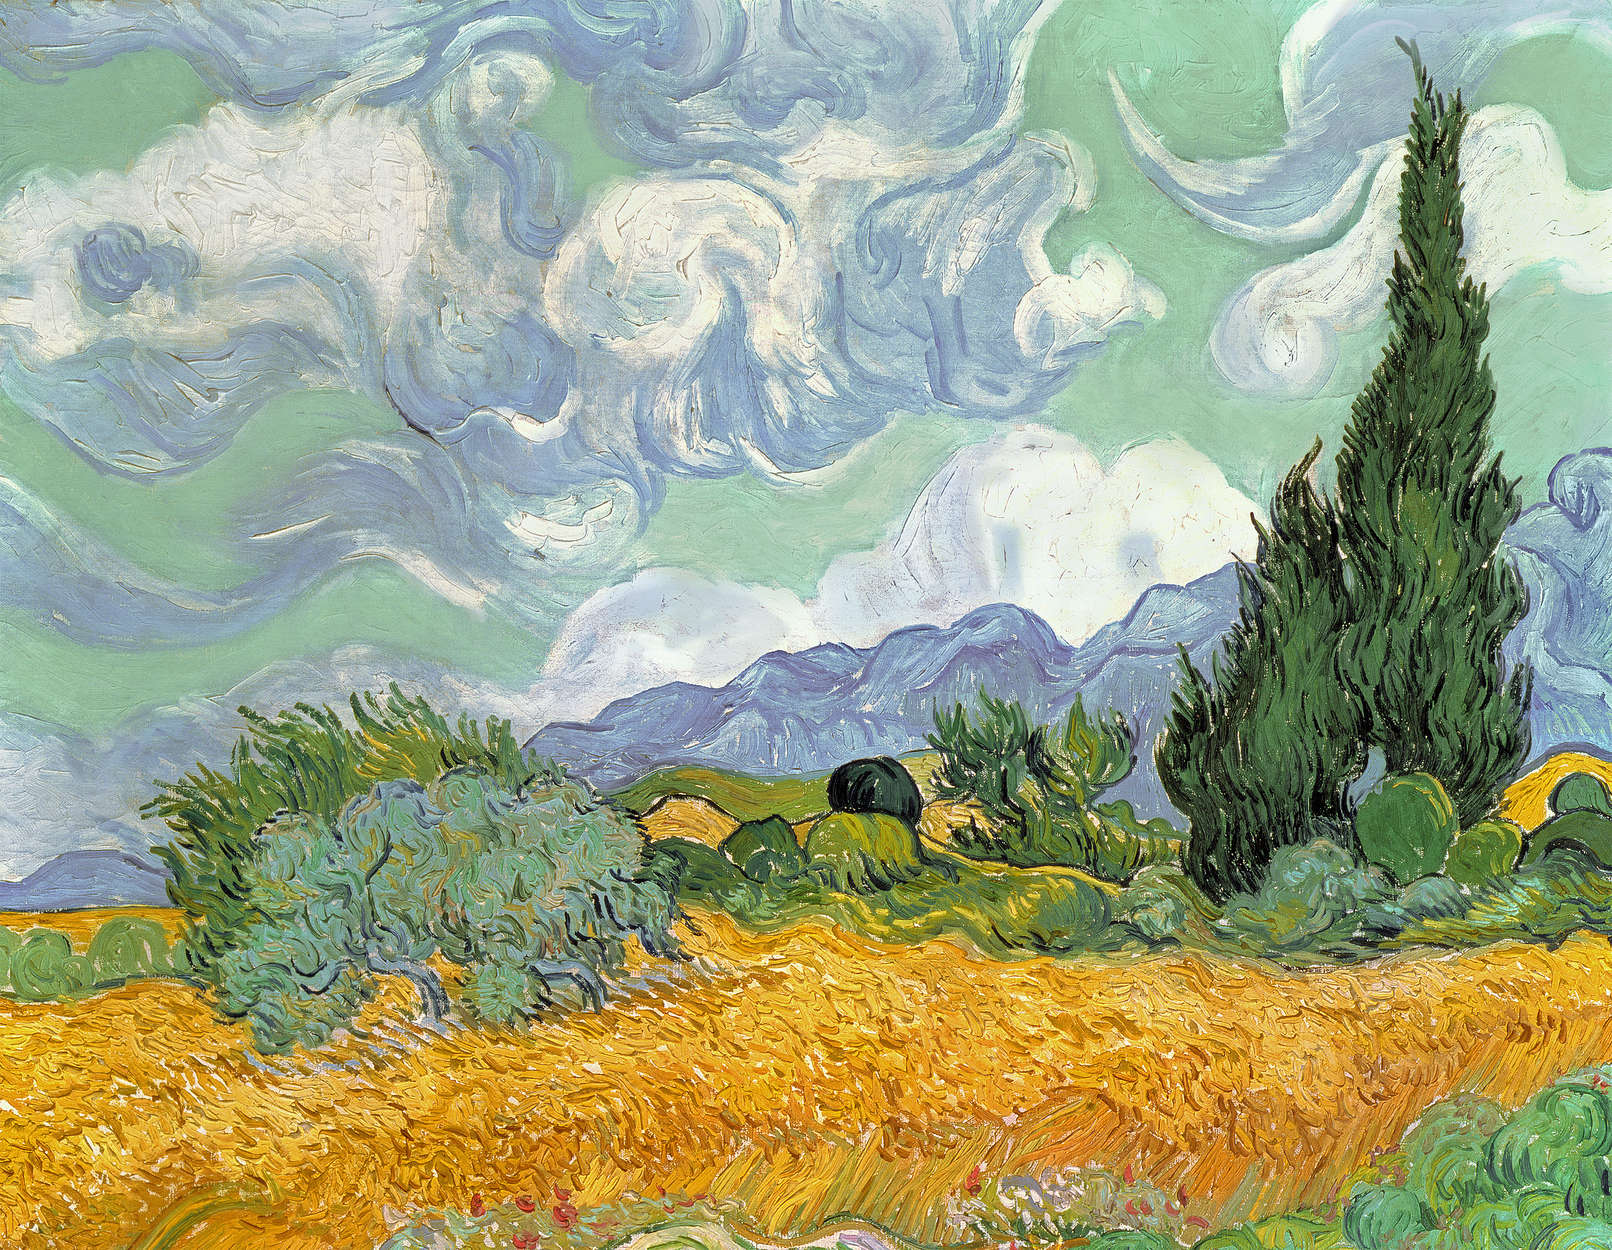             Campo di grano con cipressi", murale di Vincent van Gogh
        